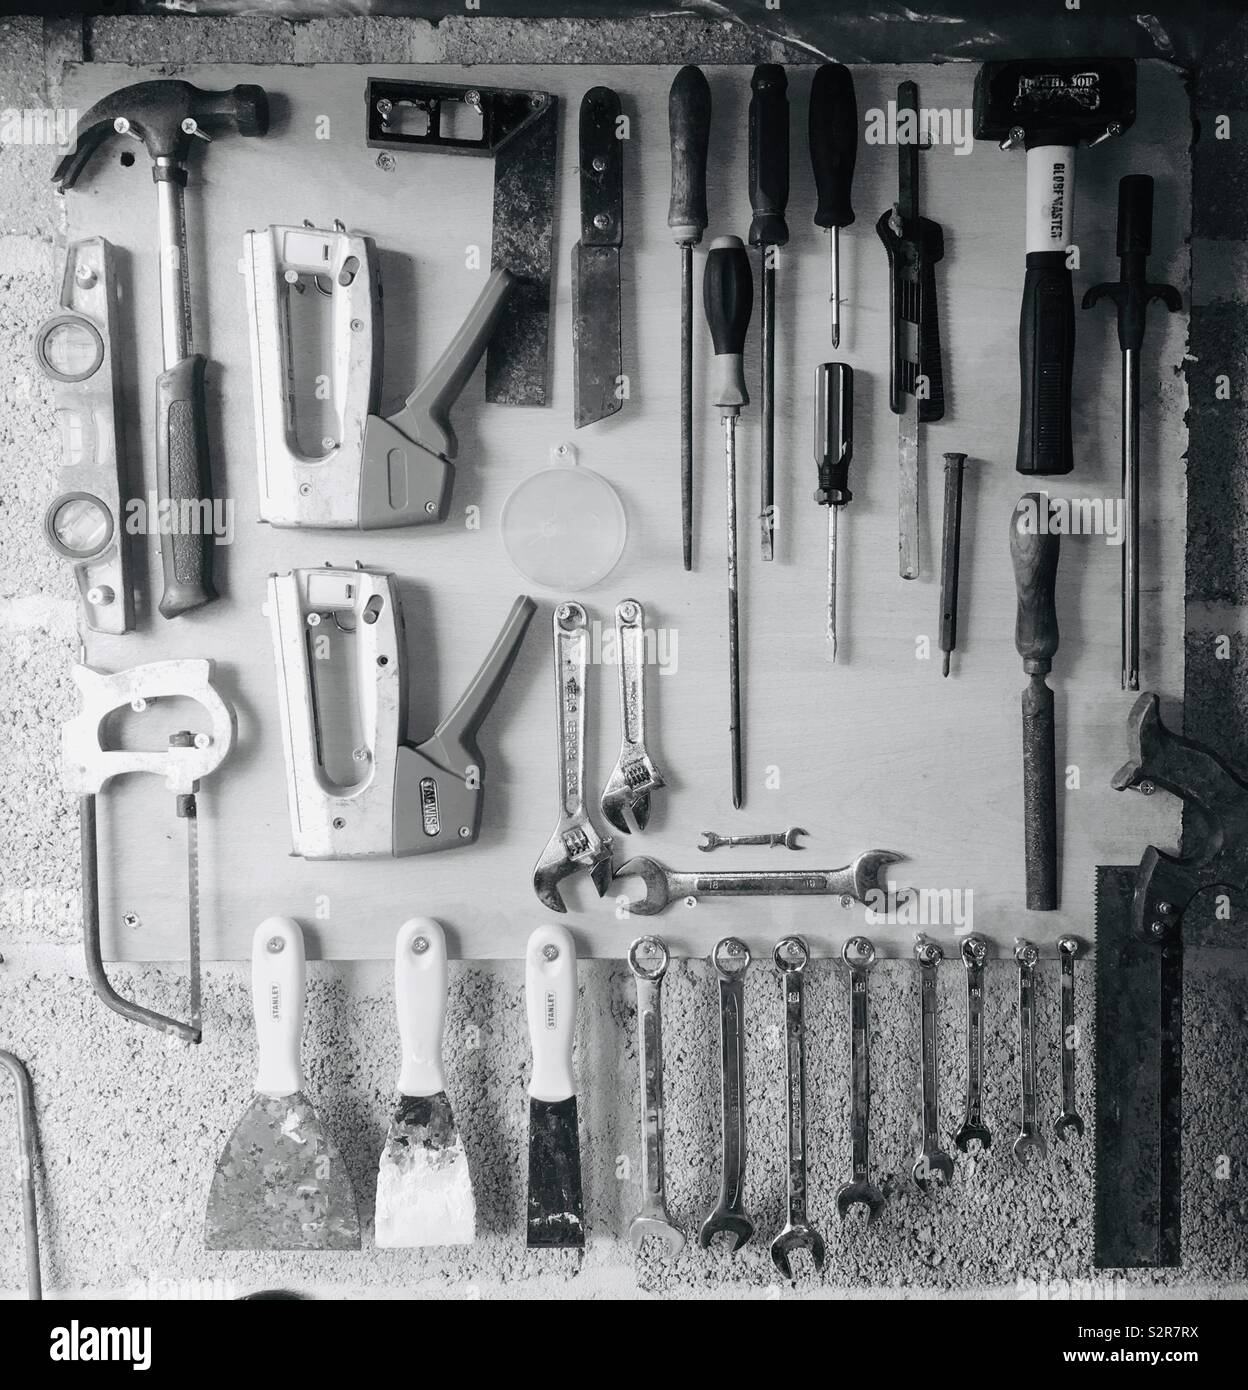 Organised tools Stock Photo